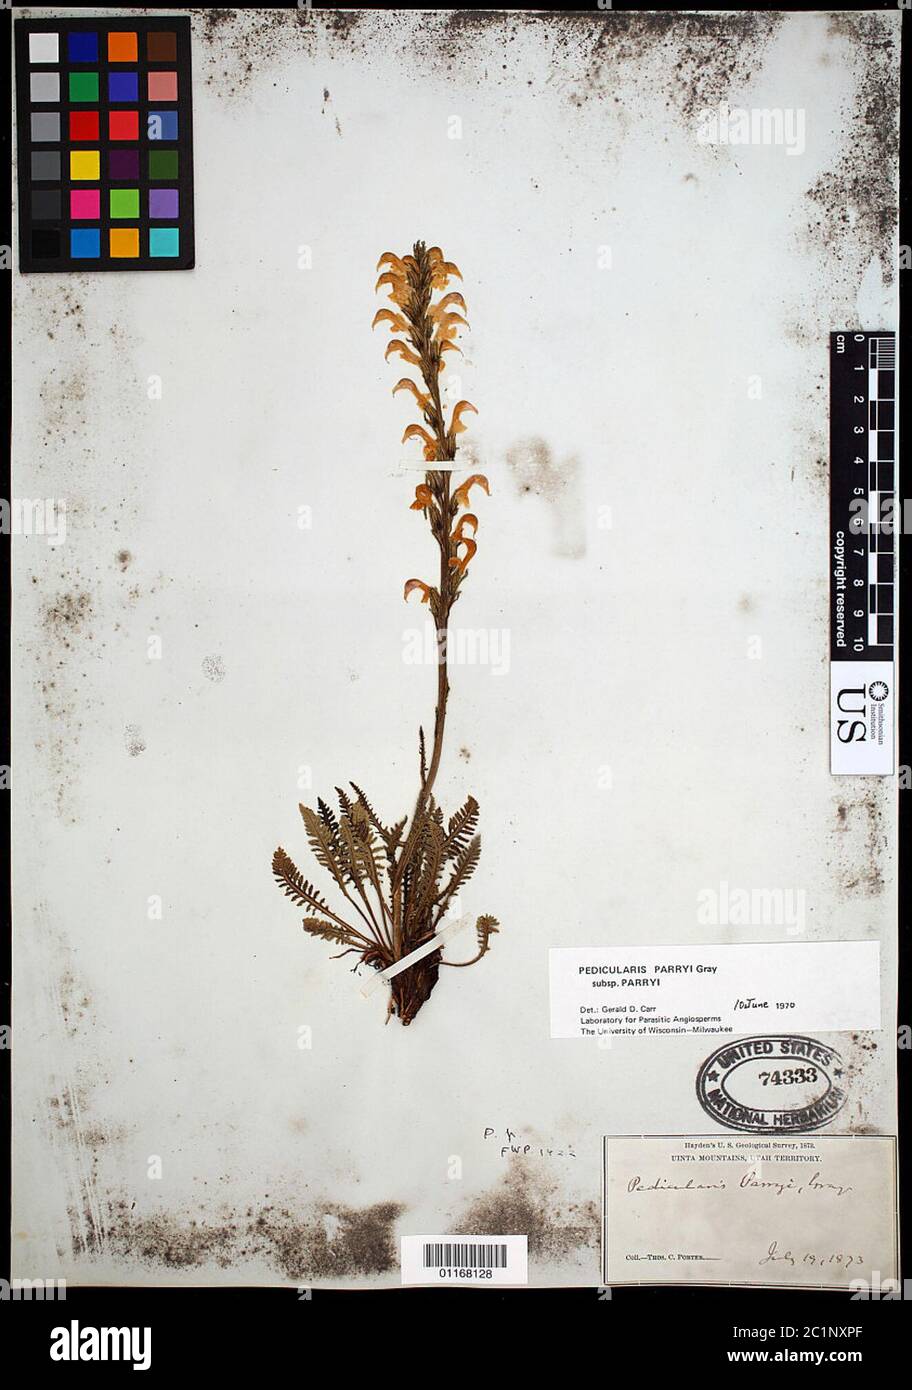 Pedicularis parryi A Gray subsp parryi Pedicularis parryi A Gray subsp parryi. Stock Photo